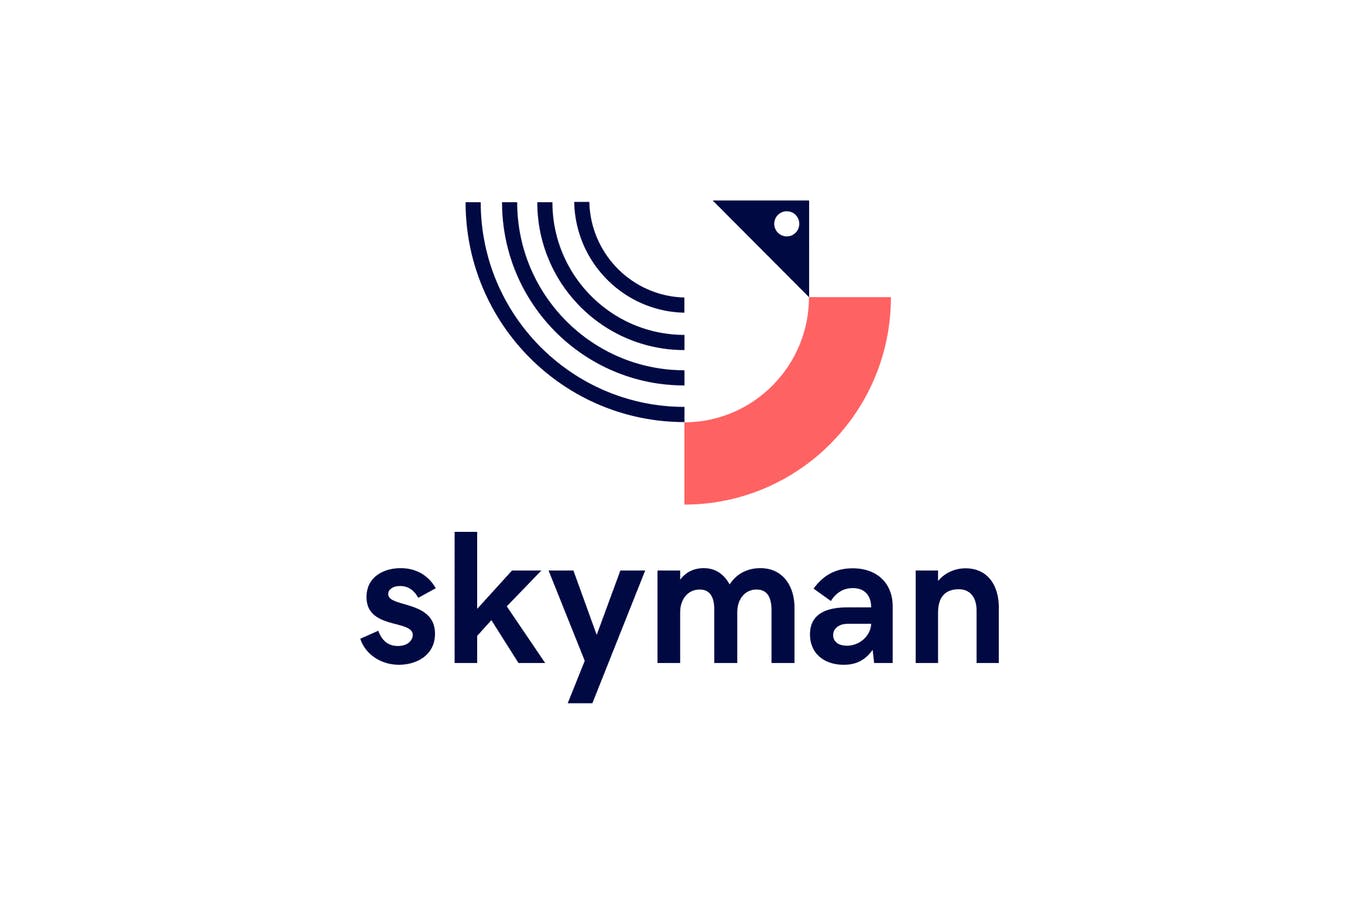 Skyman抽象几何图形Logo设计第一素材精选模板 Skyman Logo插图